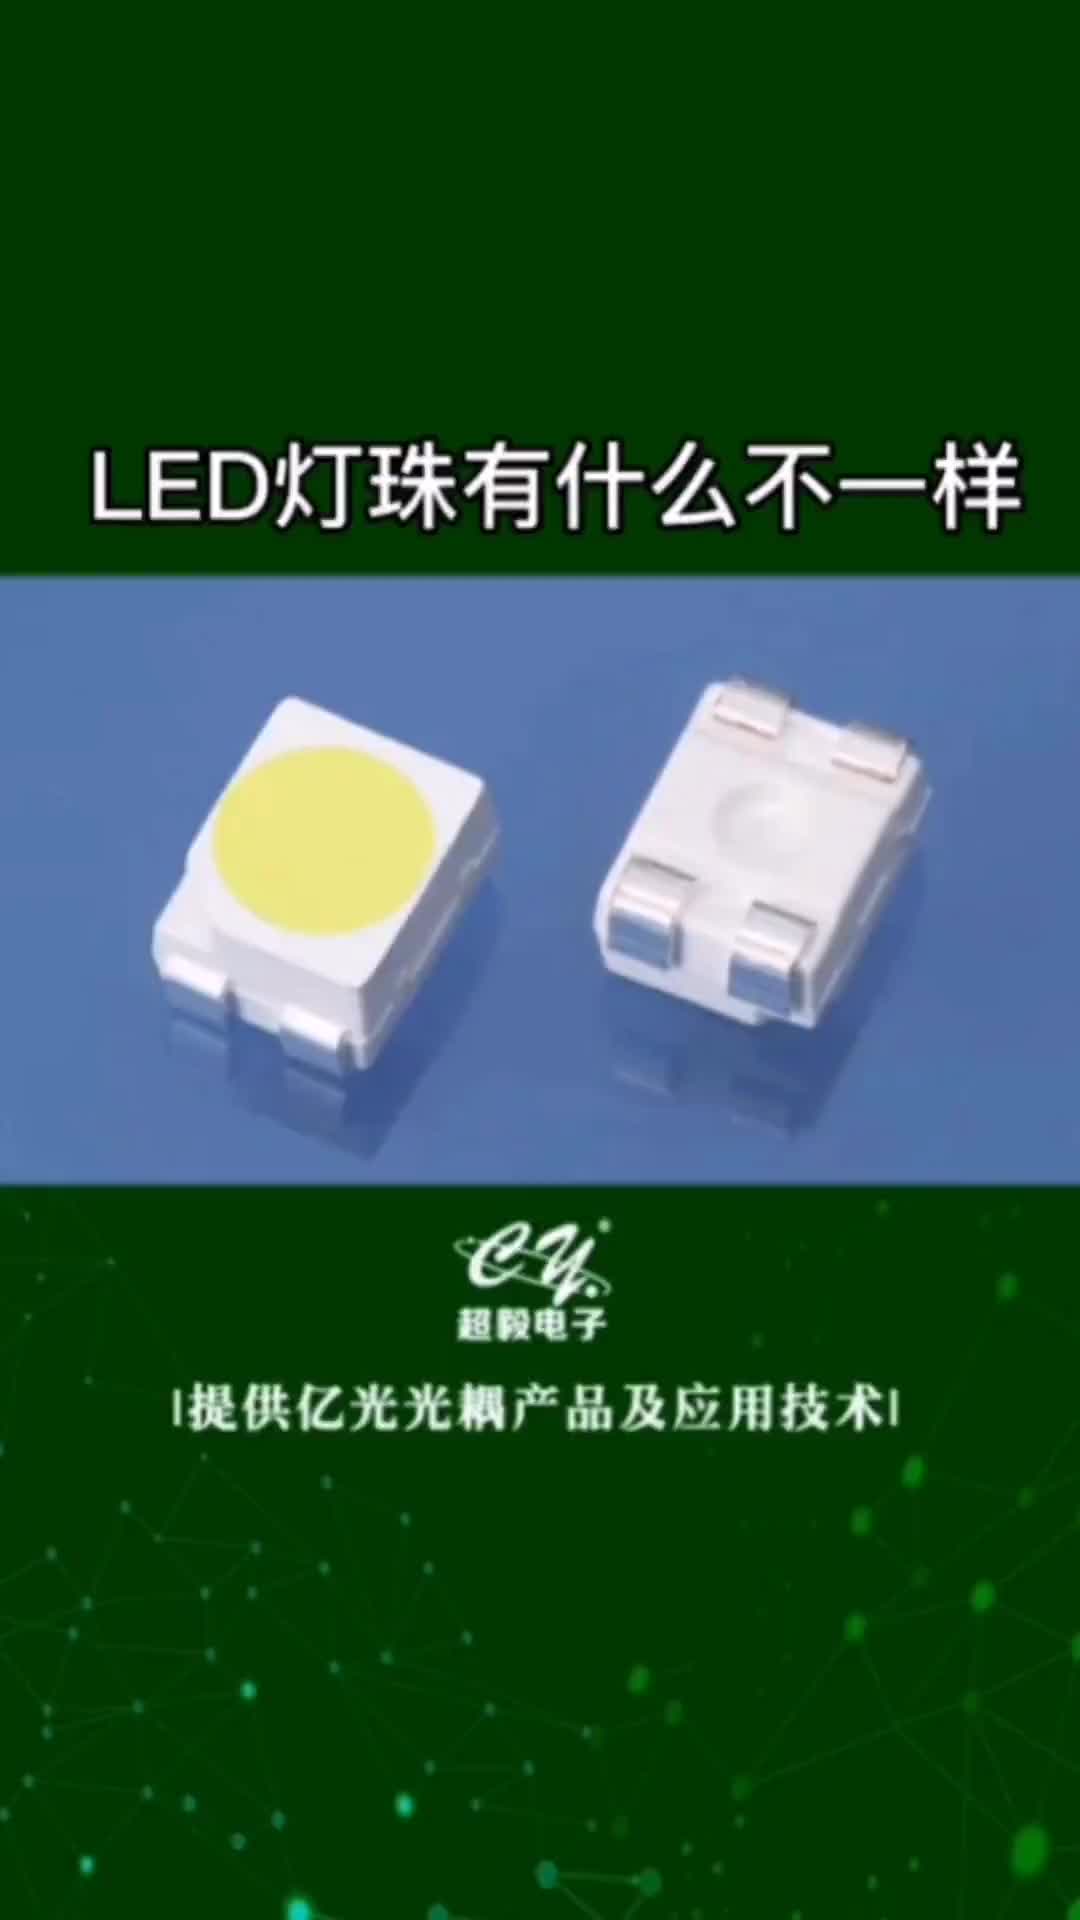 00017 LED灯珠有什么不一样#电子元器件 #发光二极管 #LED #国产芯片替换避坑指南 